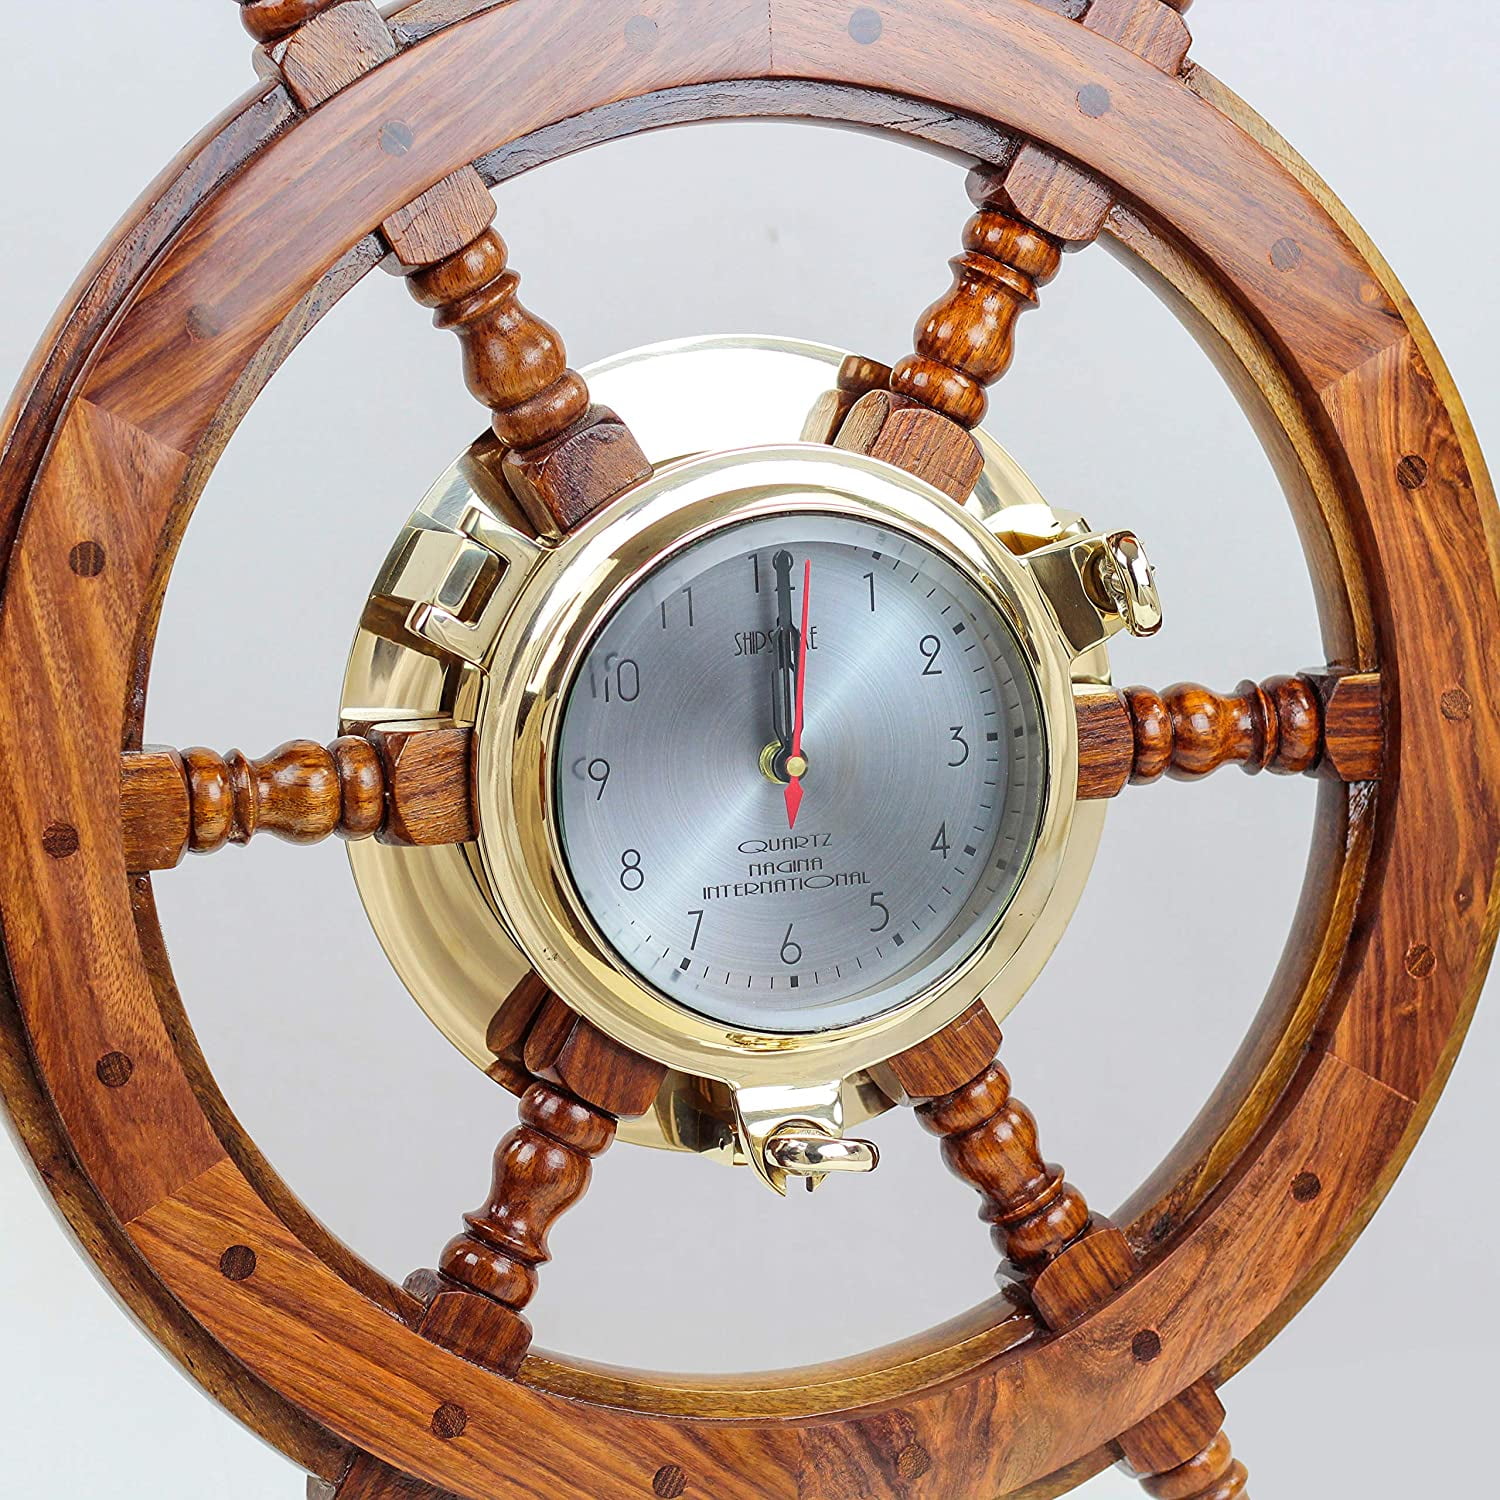 Nagina International 24 Premium Porthole Clock Ship Wheel with